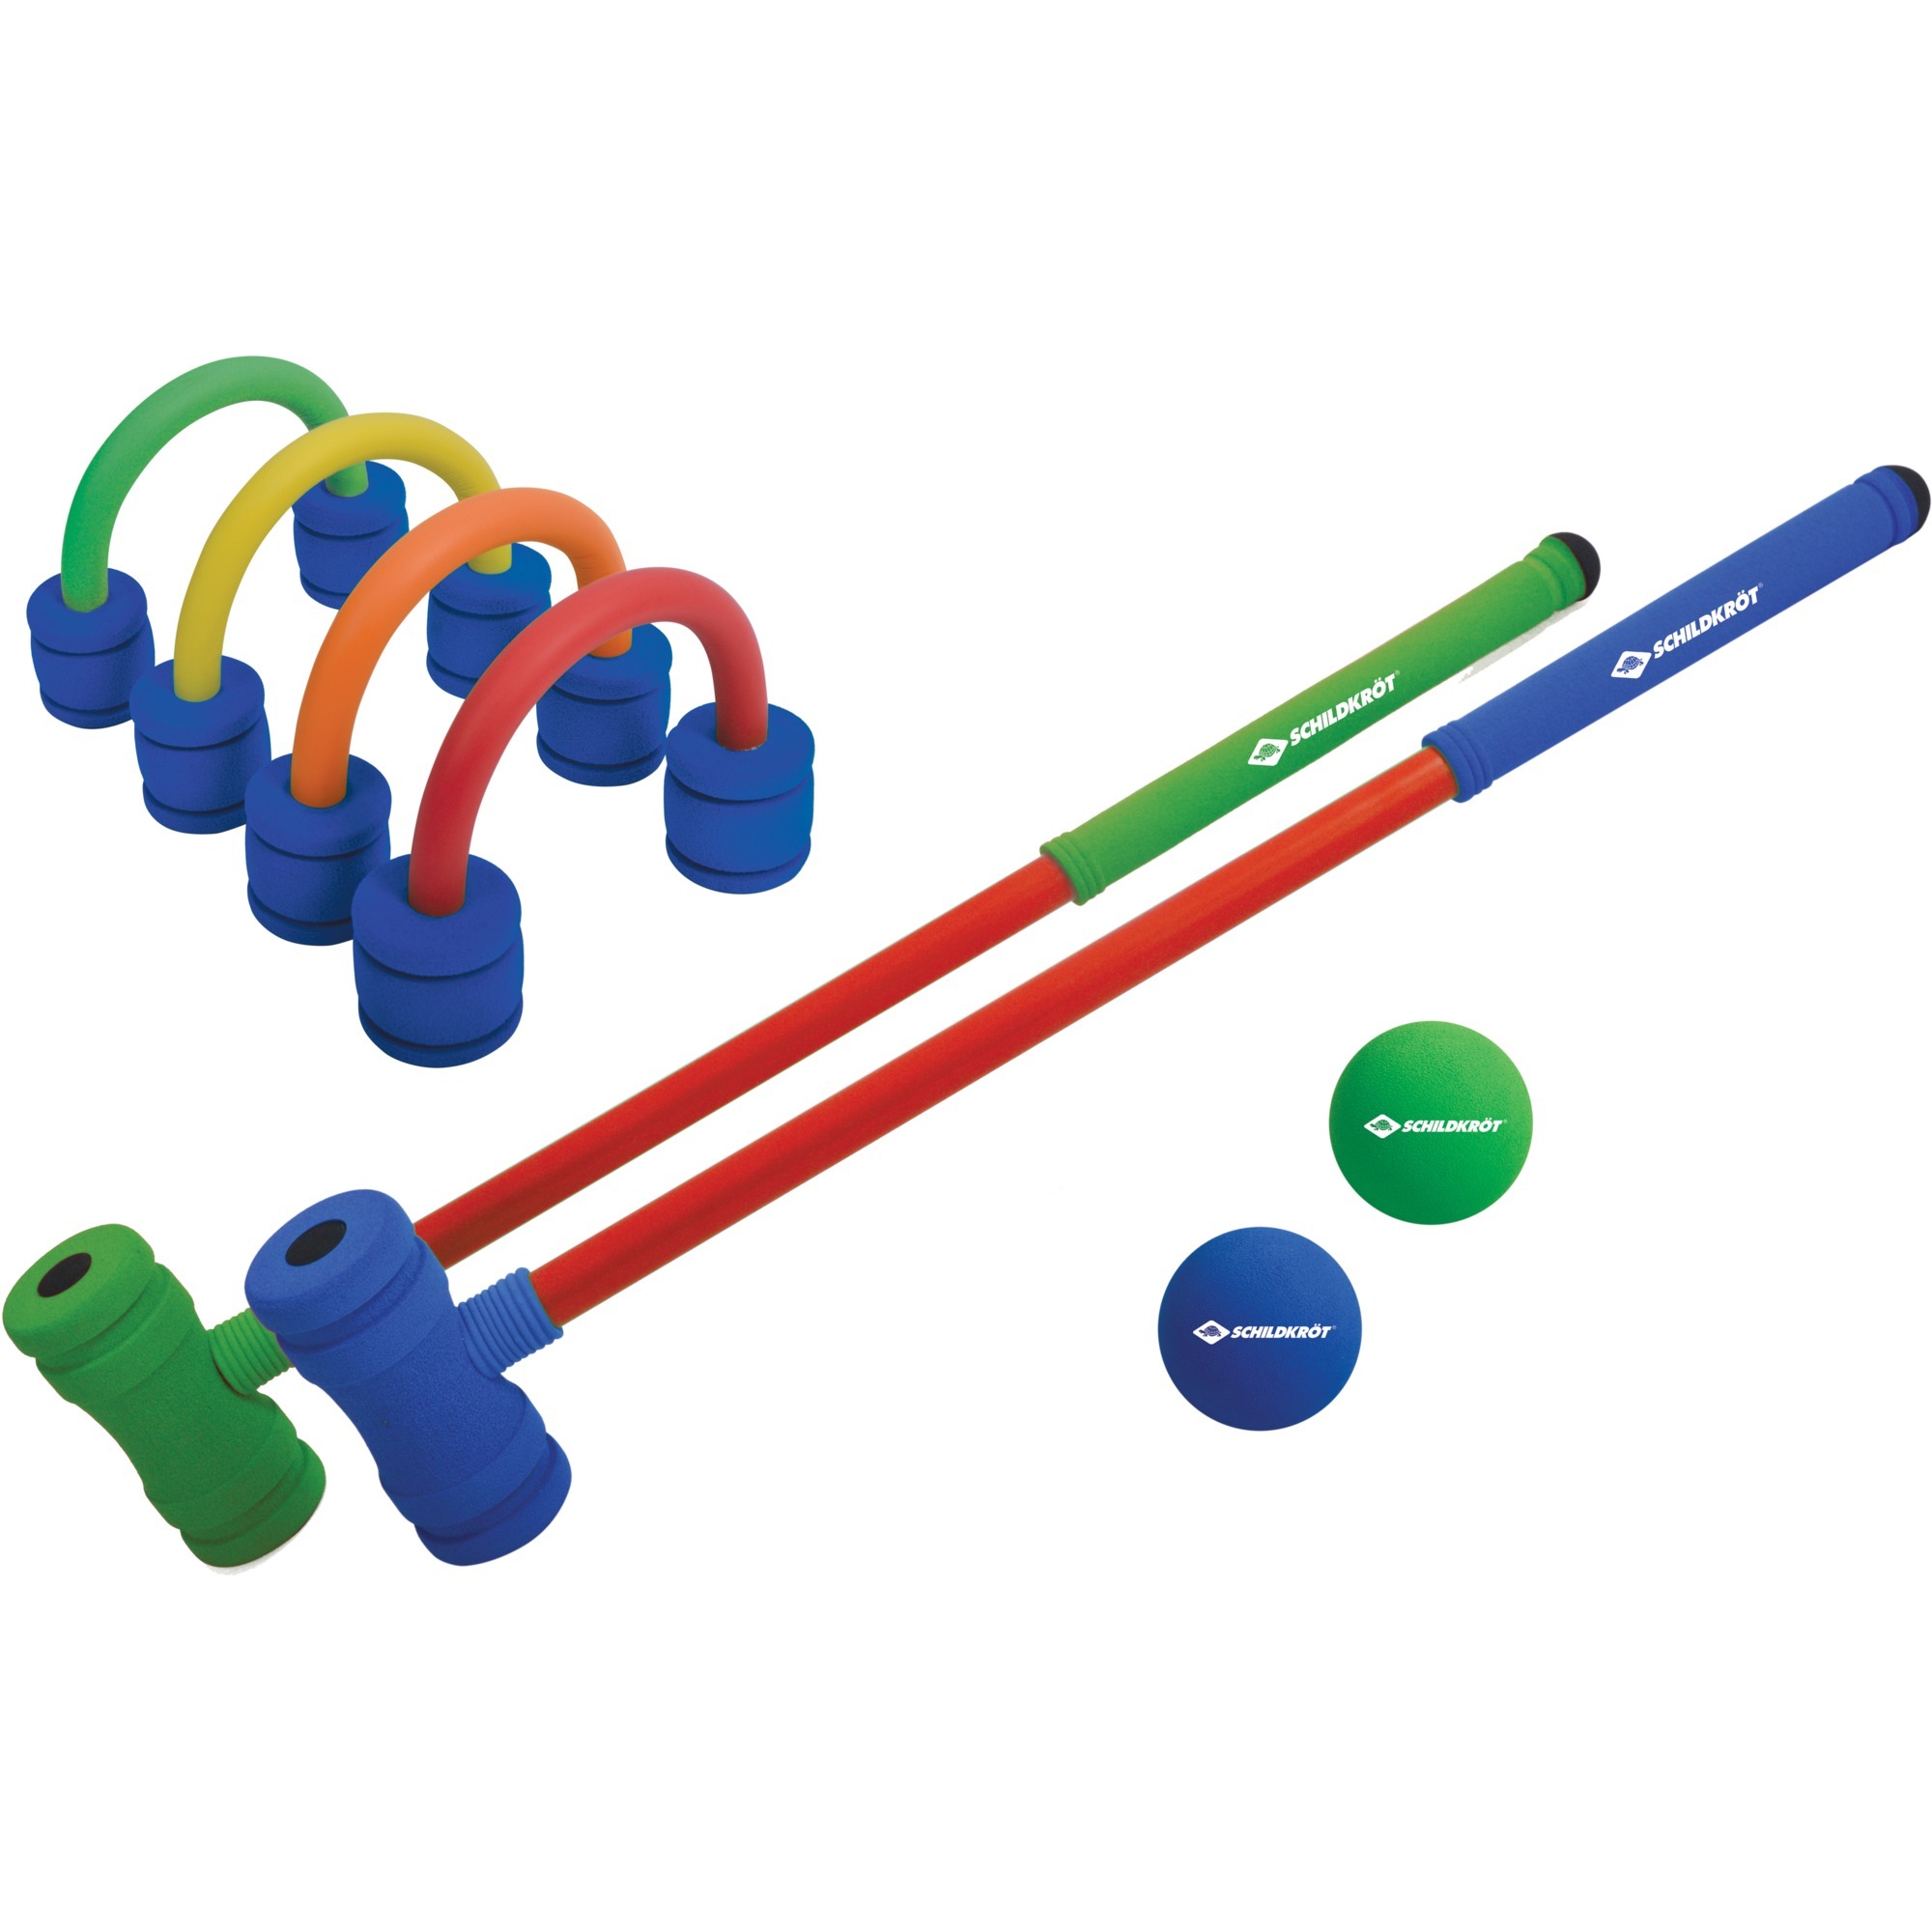 Image of Alternate - Soft Croquet Set, Geschicklichkeitsspiel online einkaufen bei Alternate